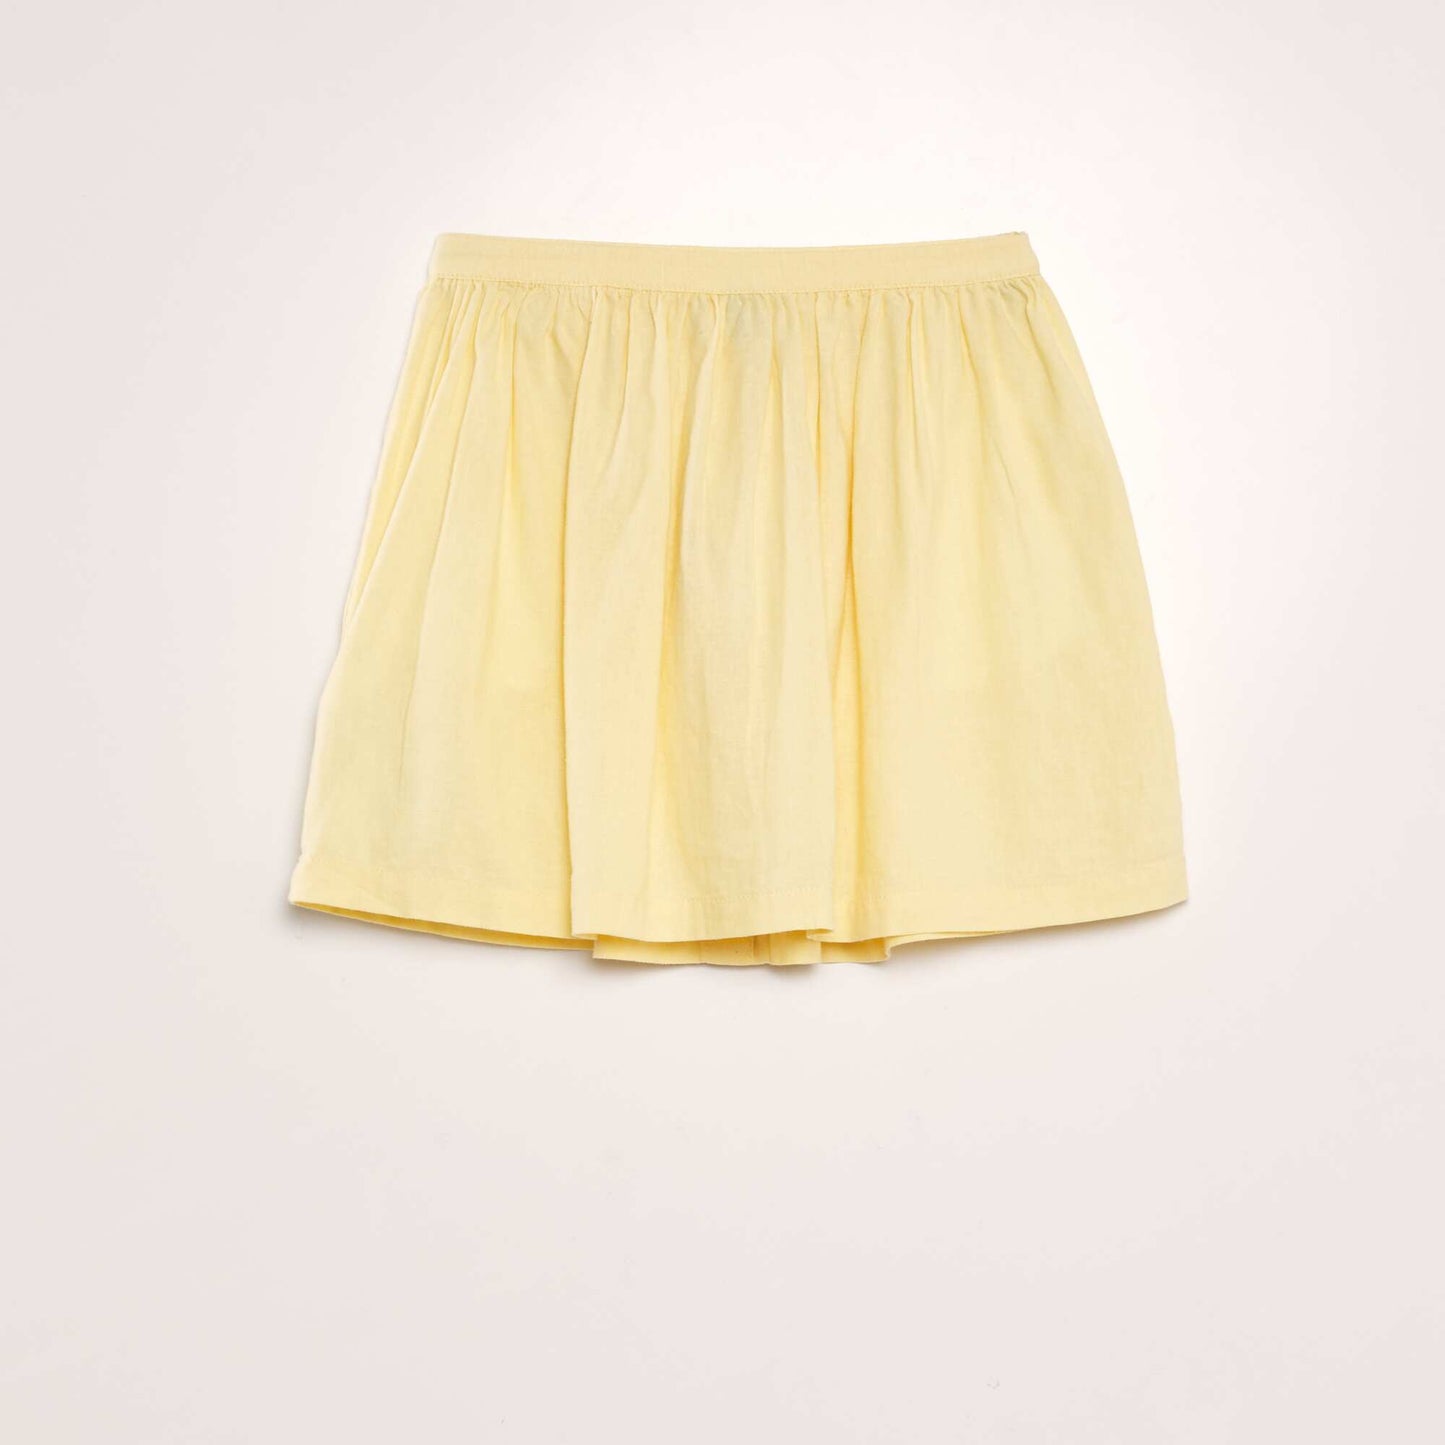 Buttoned linen skirt YELLOW